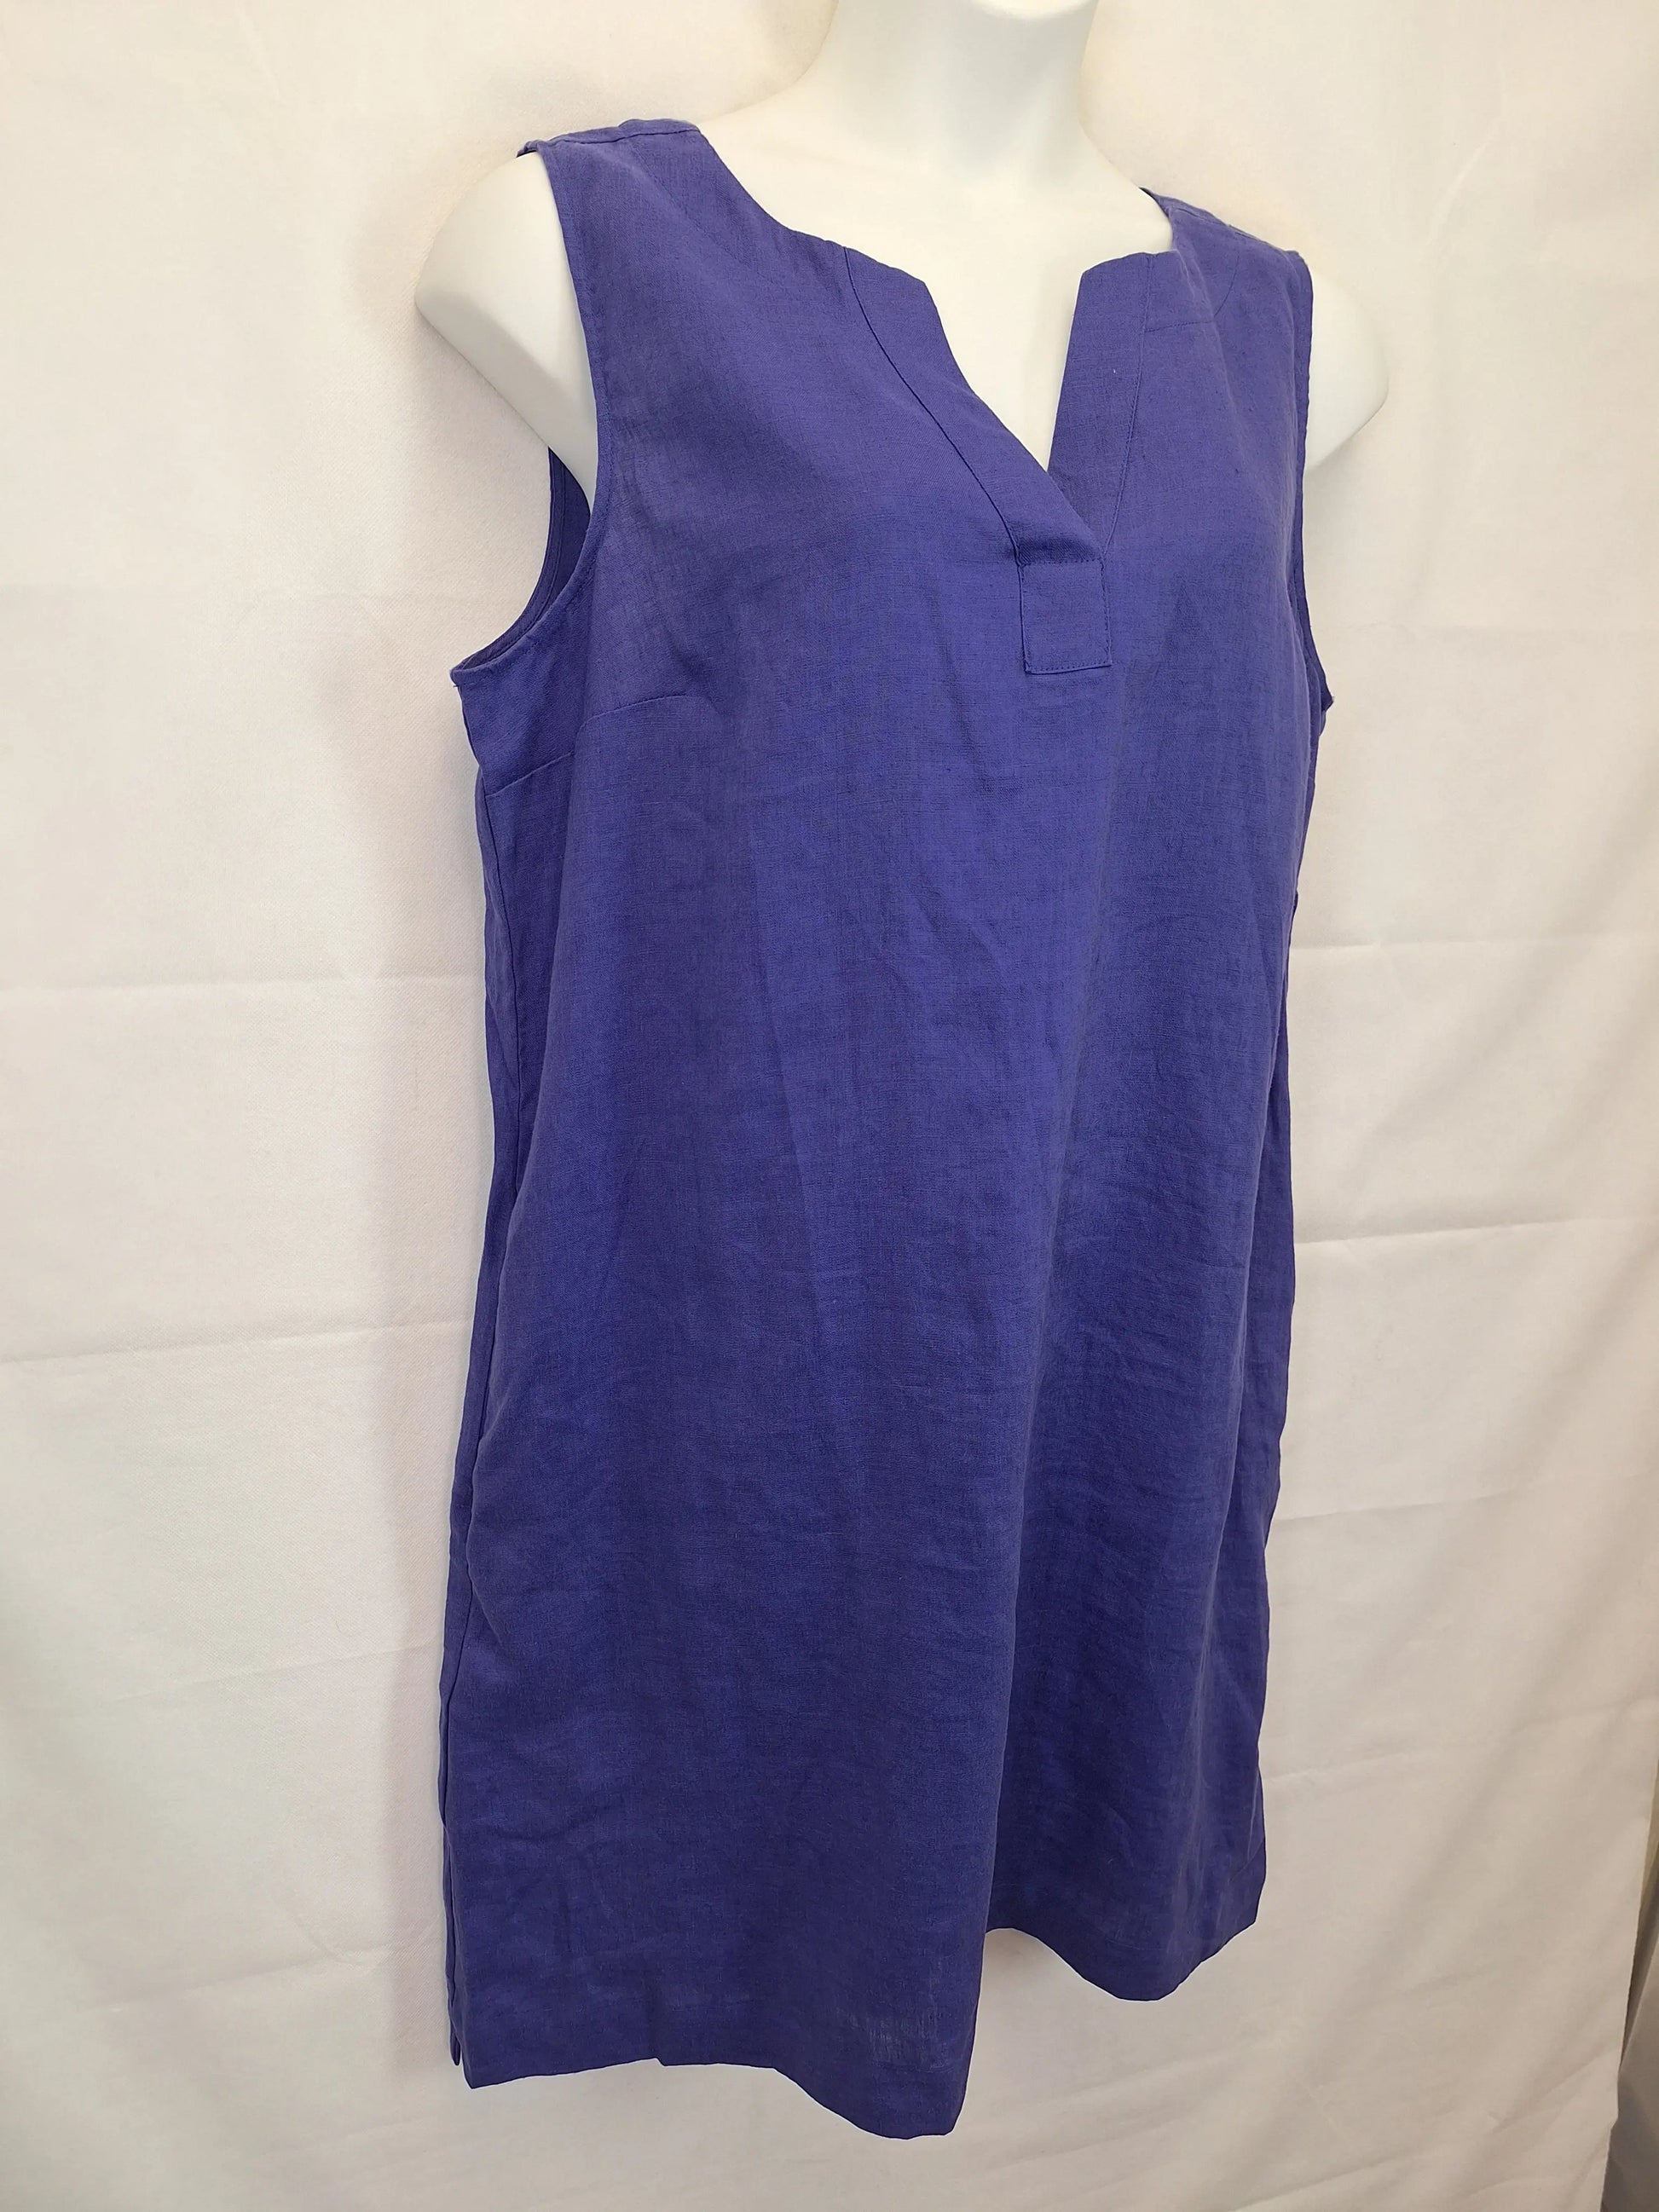 Jacqui E Violet Linen Mini Dress Size 18 – SwapUp